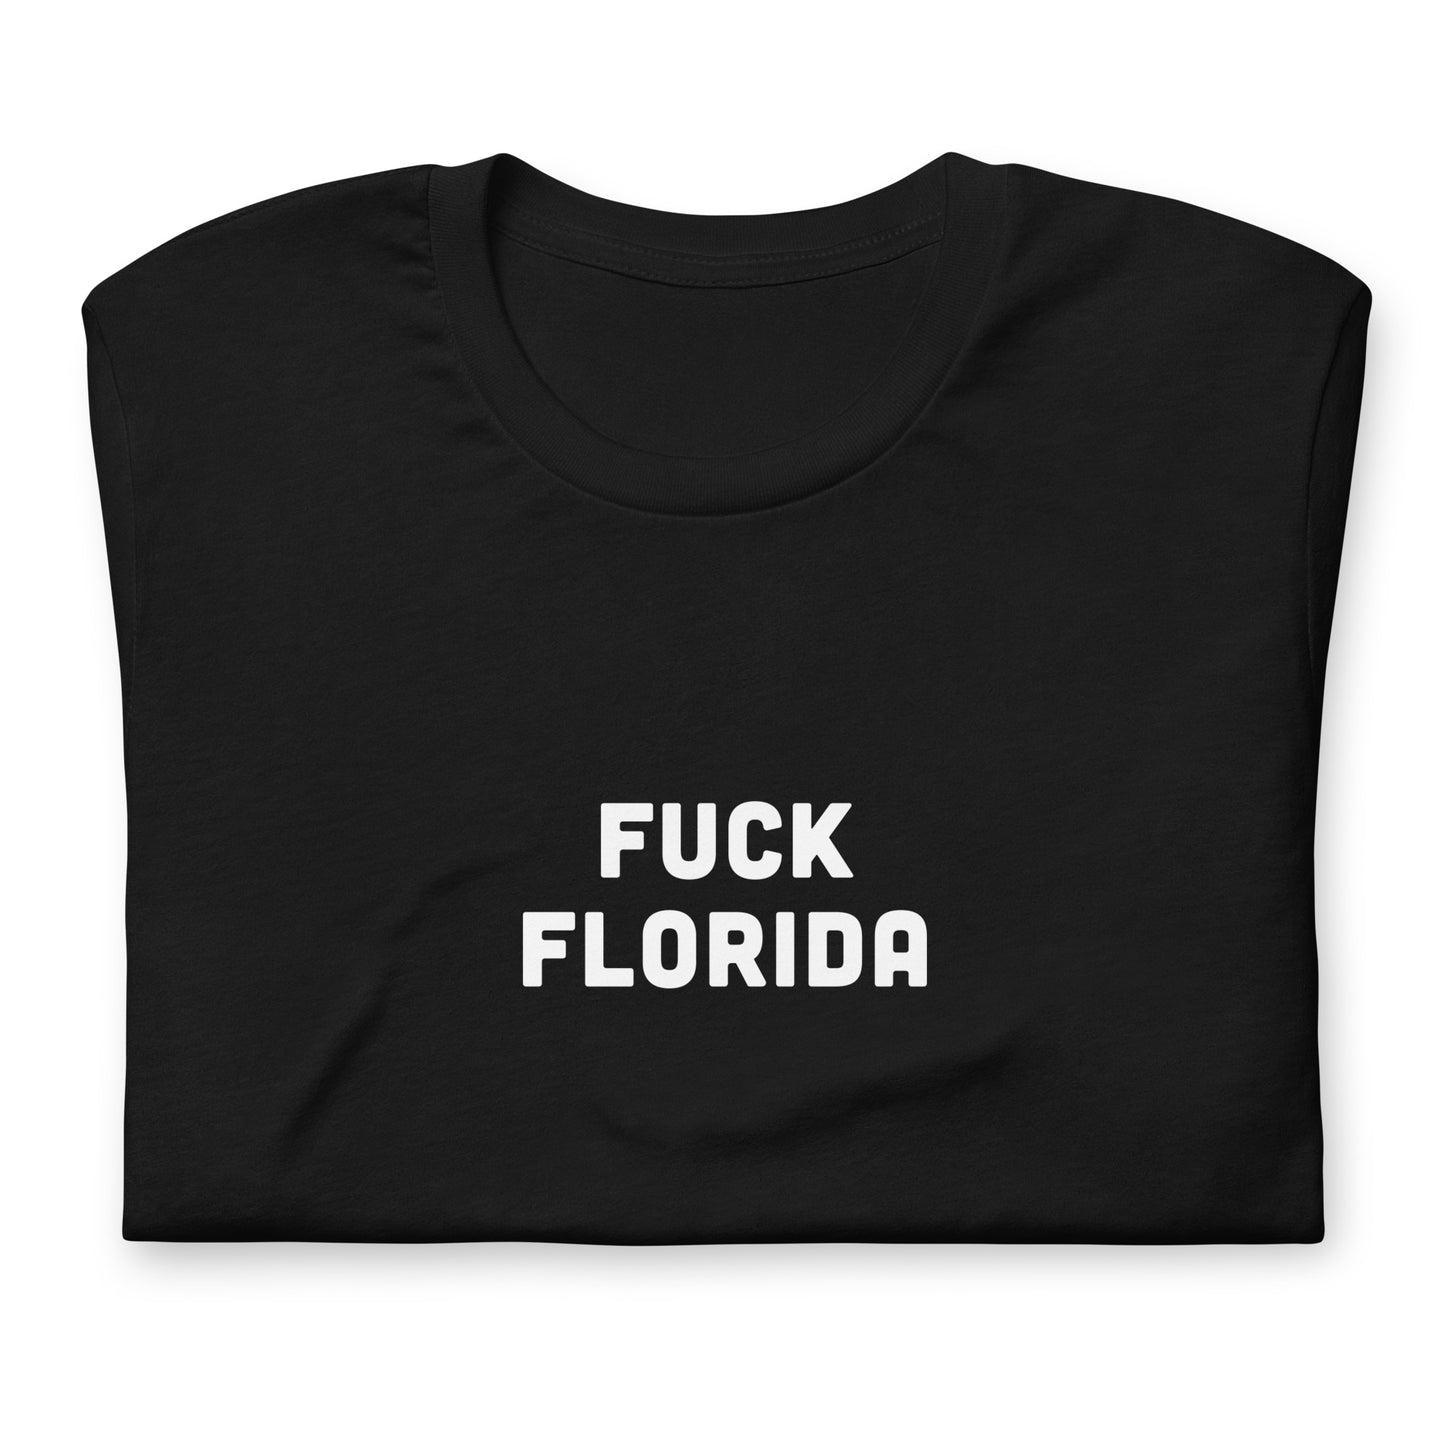 Fuck Florida T-Shirt Size M Color Black